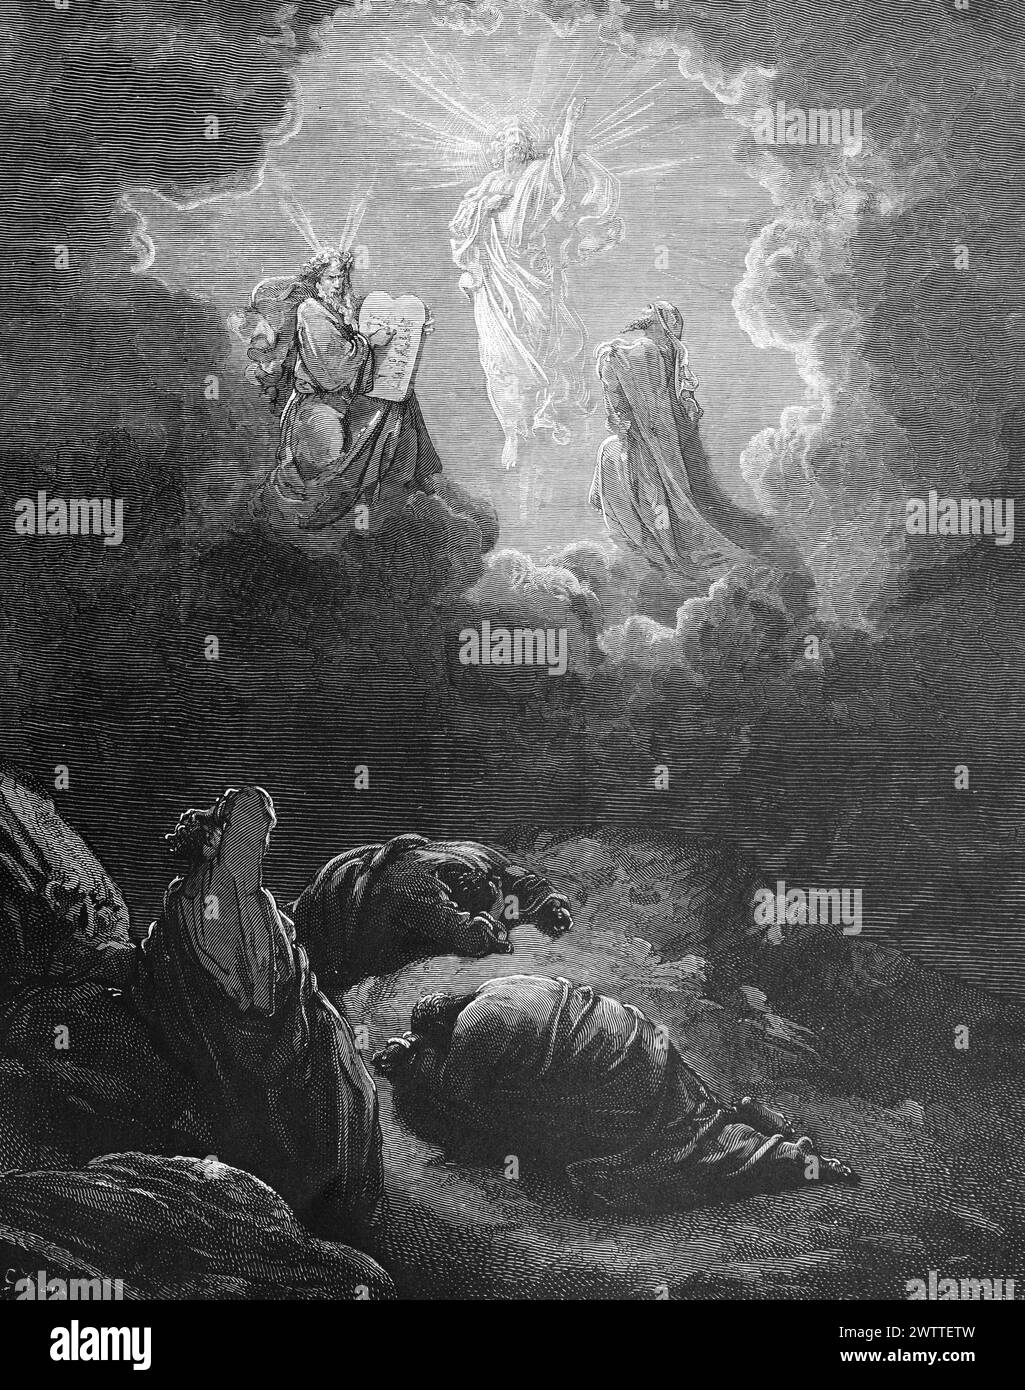 La Trasfigurazione di Cristo, l'Antico Testamento, la Bibbia, il Vangelo secondo Matteo 17 , ilustration storico 1886 Foto Stock